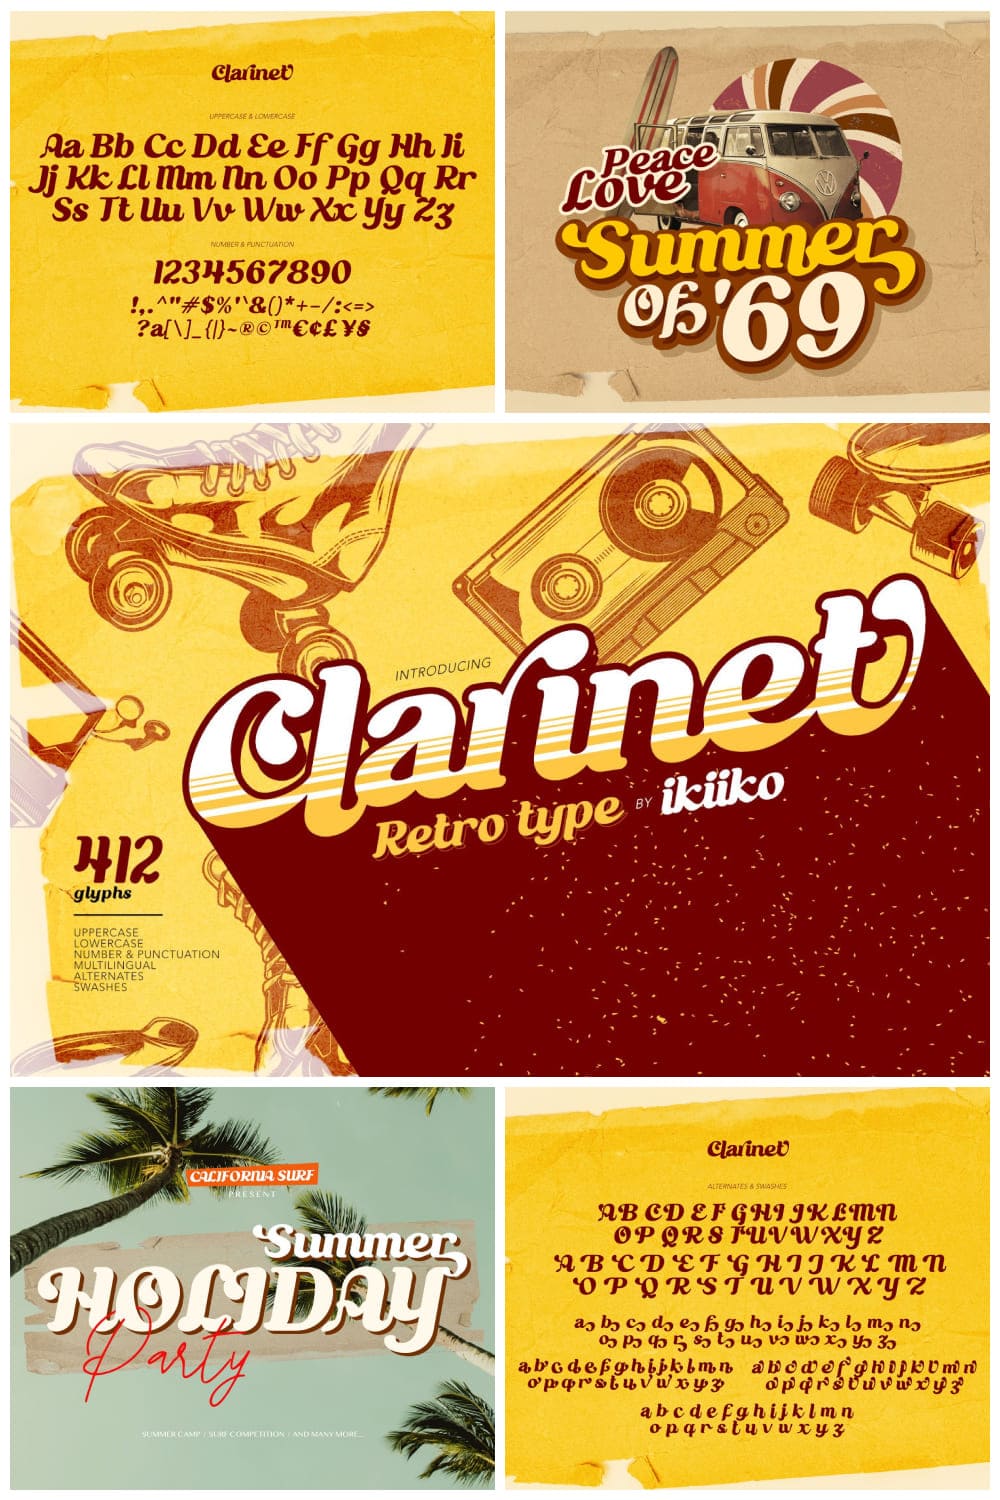 Clarinet - Retro Type.